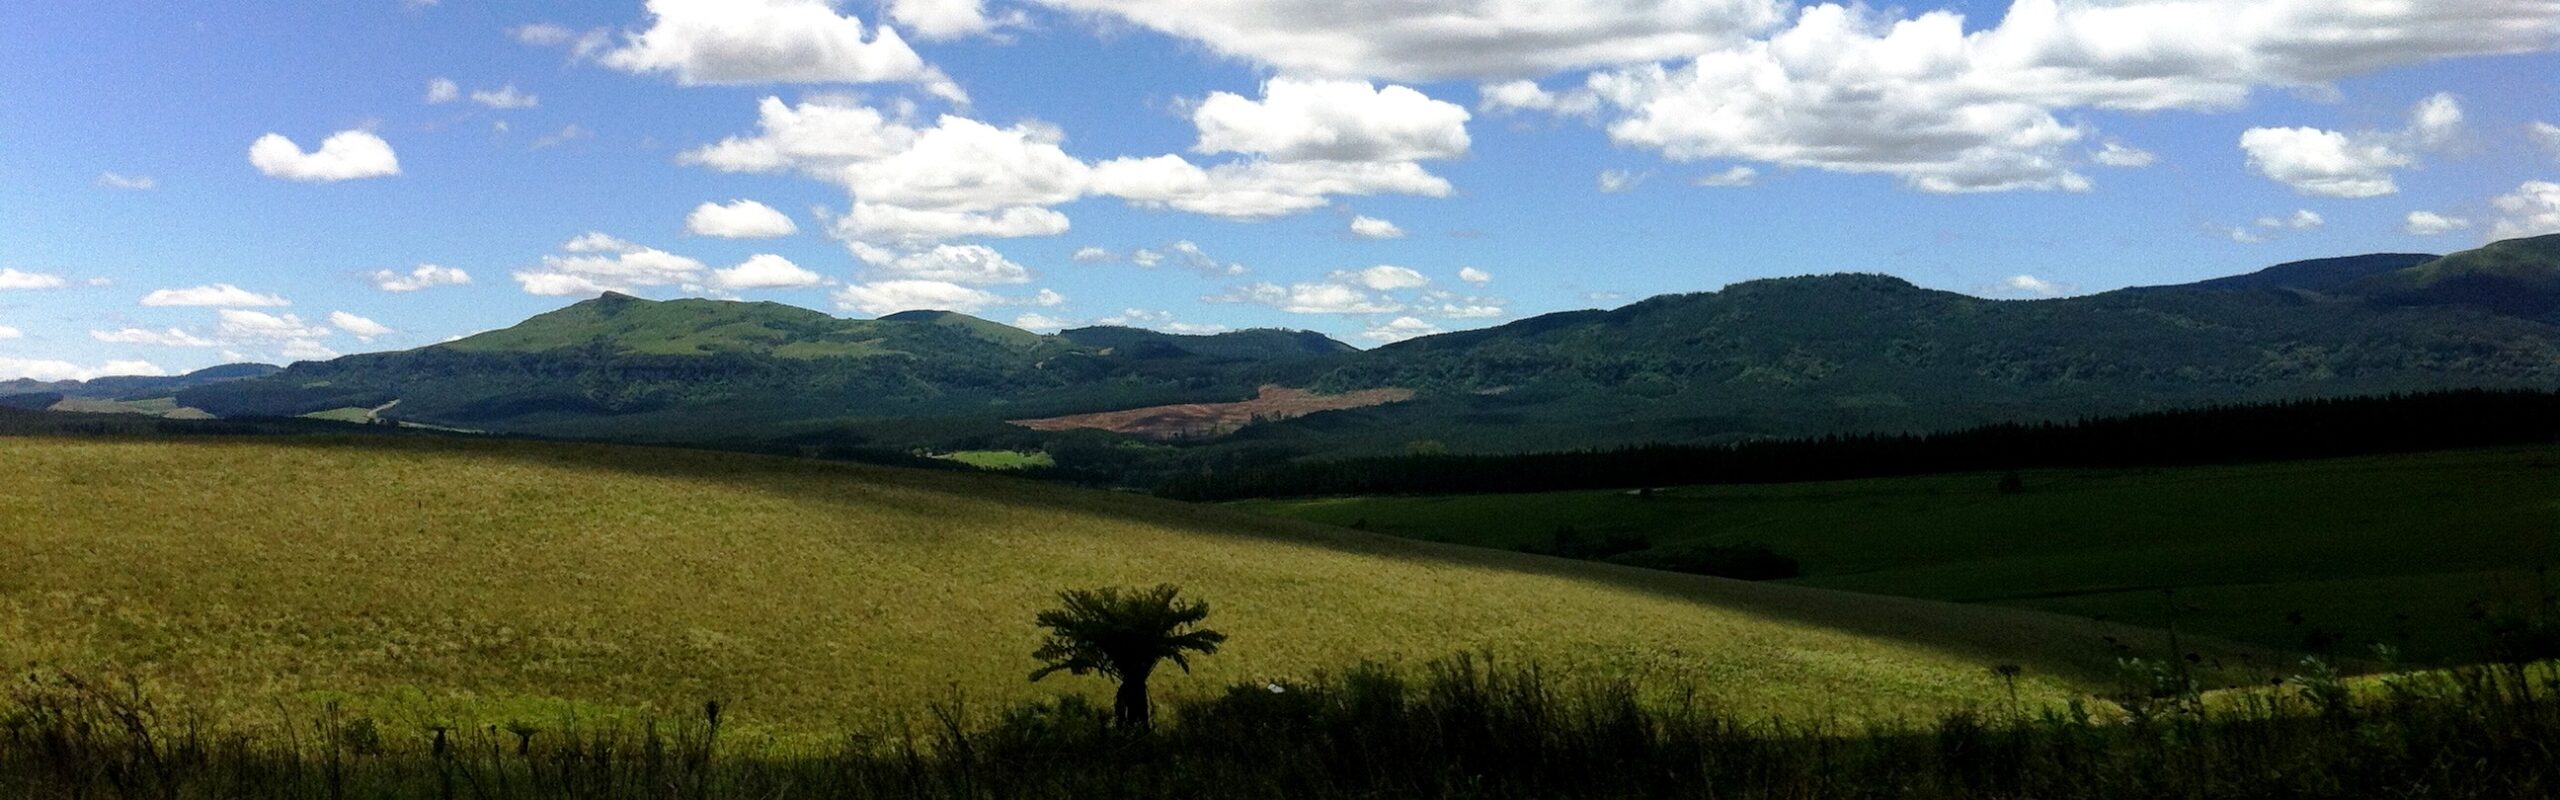 Diario di viaggio in Sudafrica: on the road in Mpumalanga